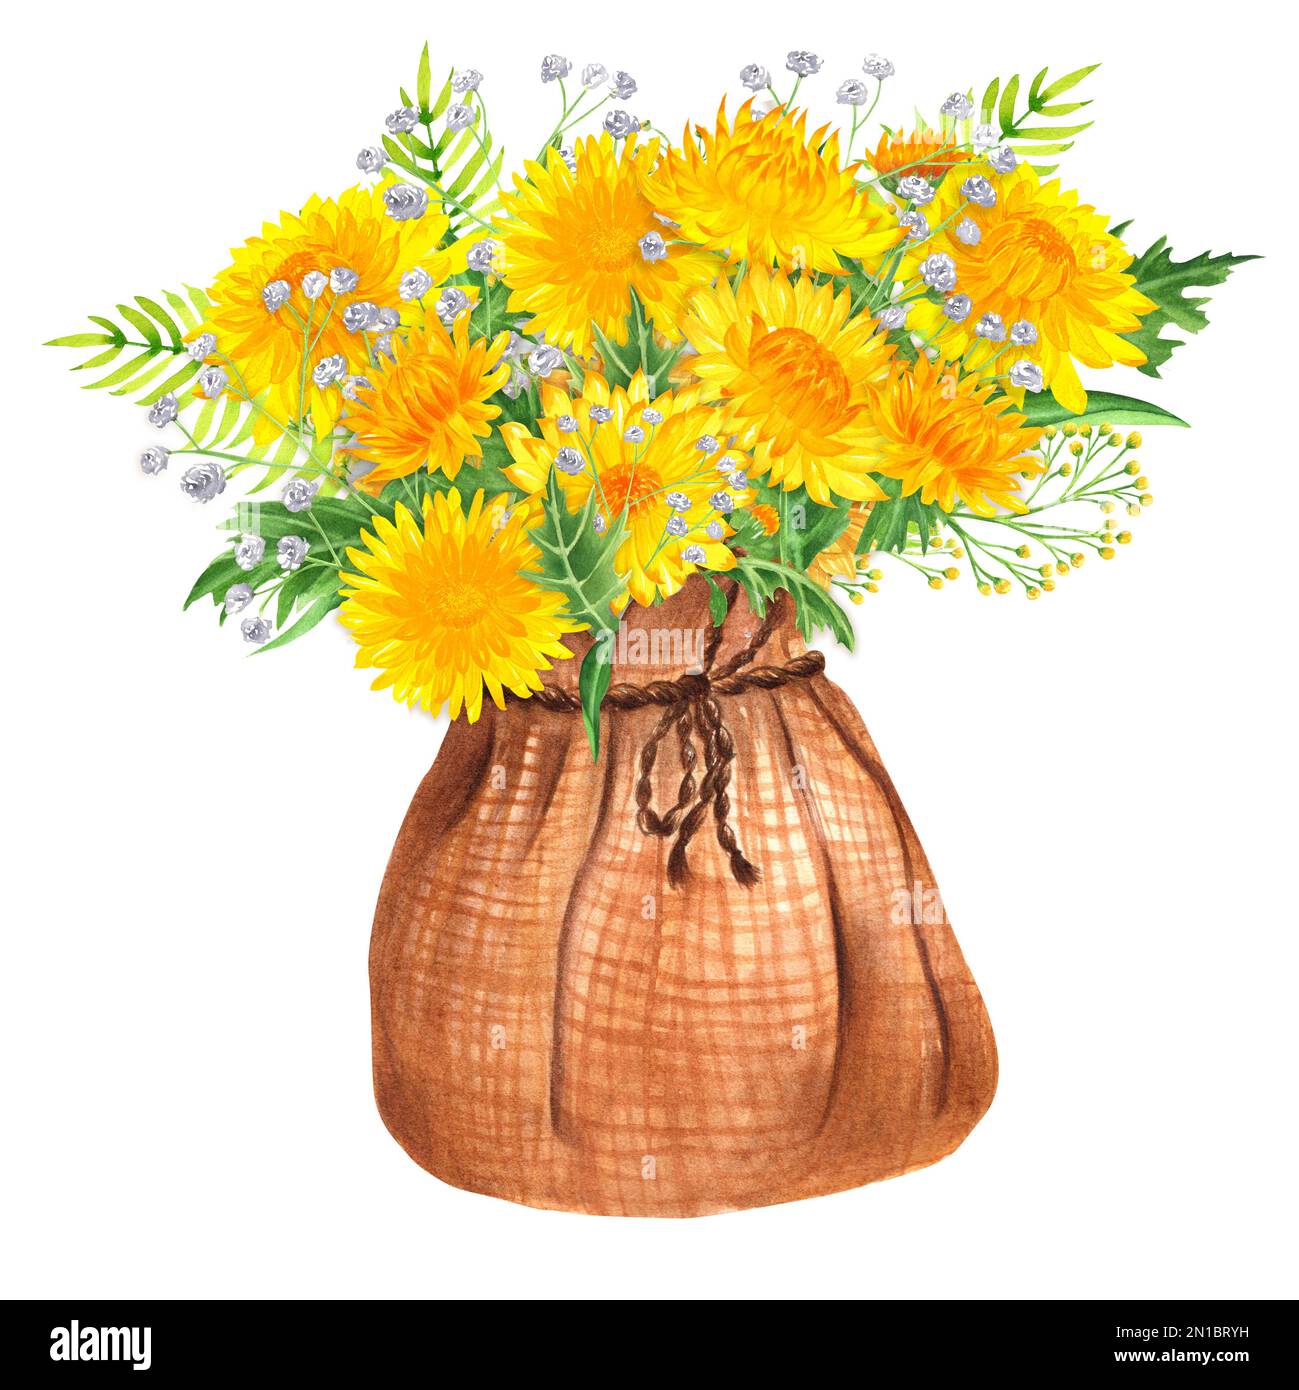 Bouquet de fleurs aquarelles dessinées à la main de chrysanthème jaune et autres fleurs dans un sac en toile de jute. Une petite partie de l'ensemble de grandes FLEURS Banque D'Images